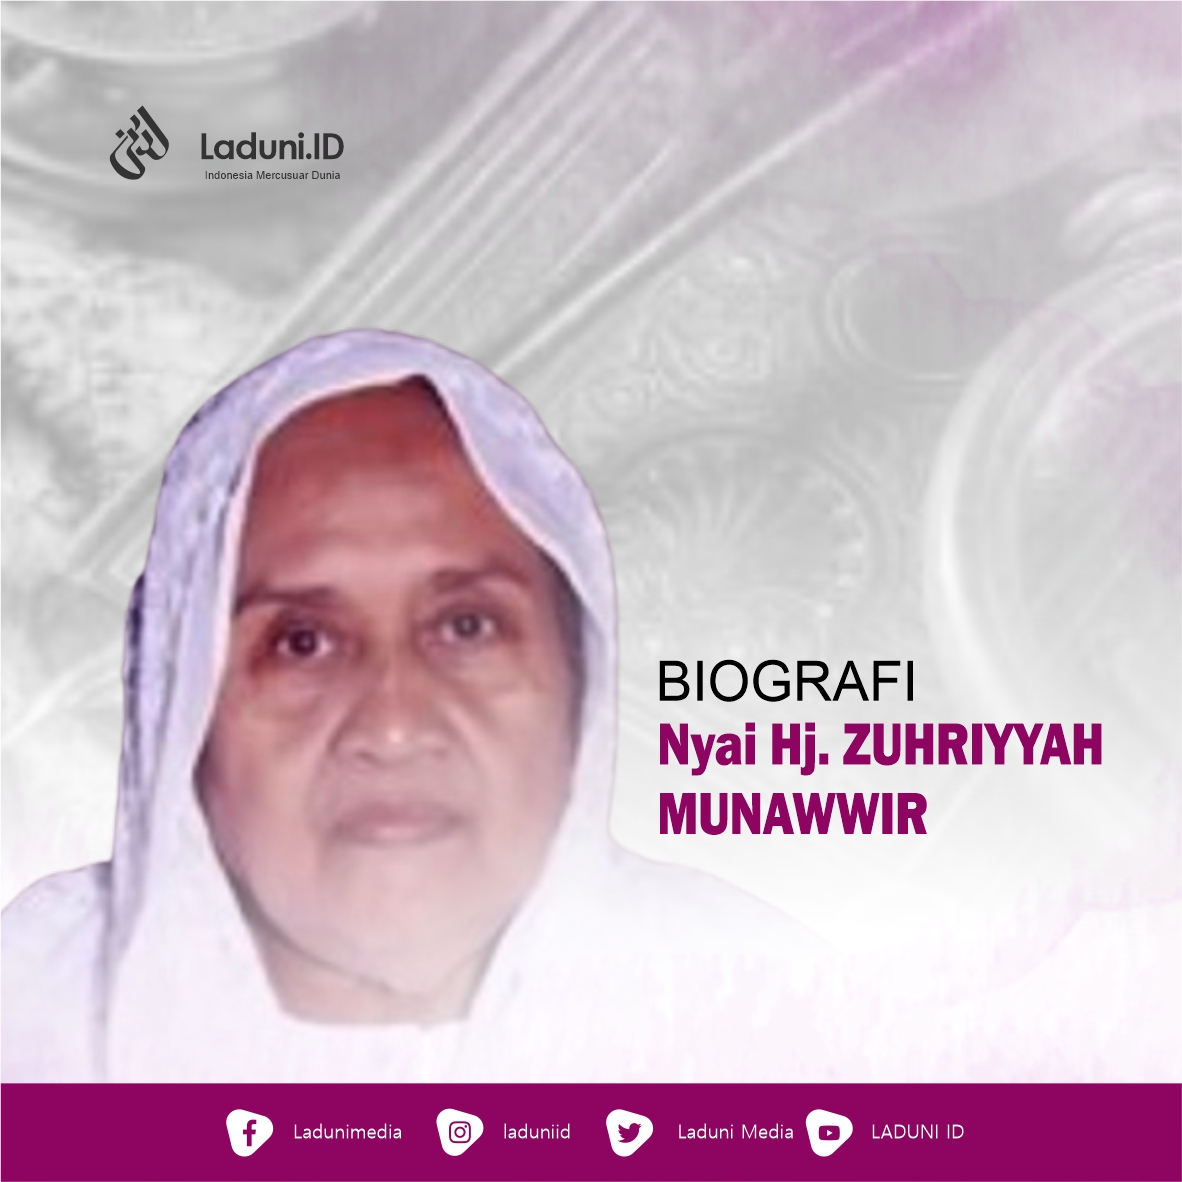 Biografi Nyai Hj. Zuhriyyah Munawwir